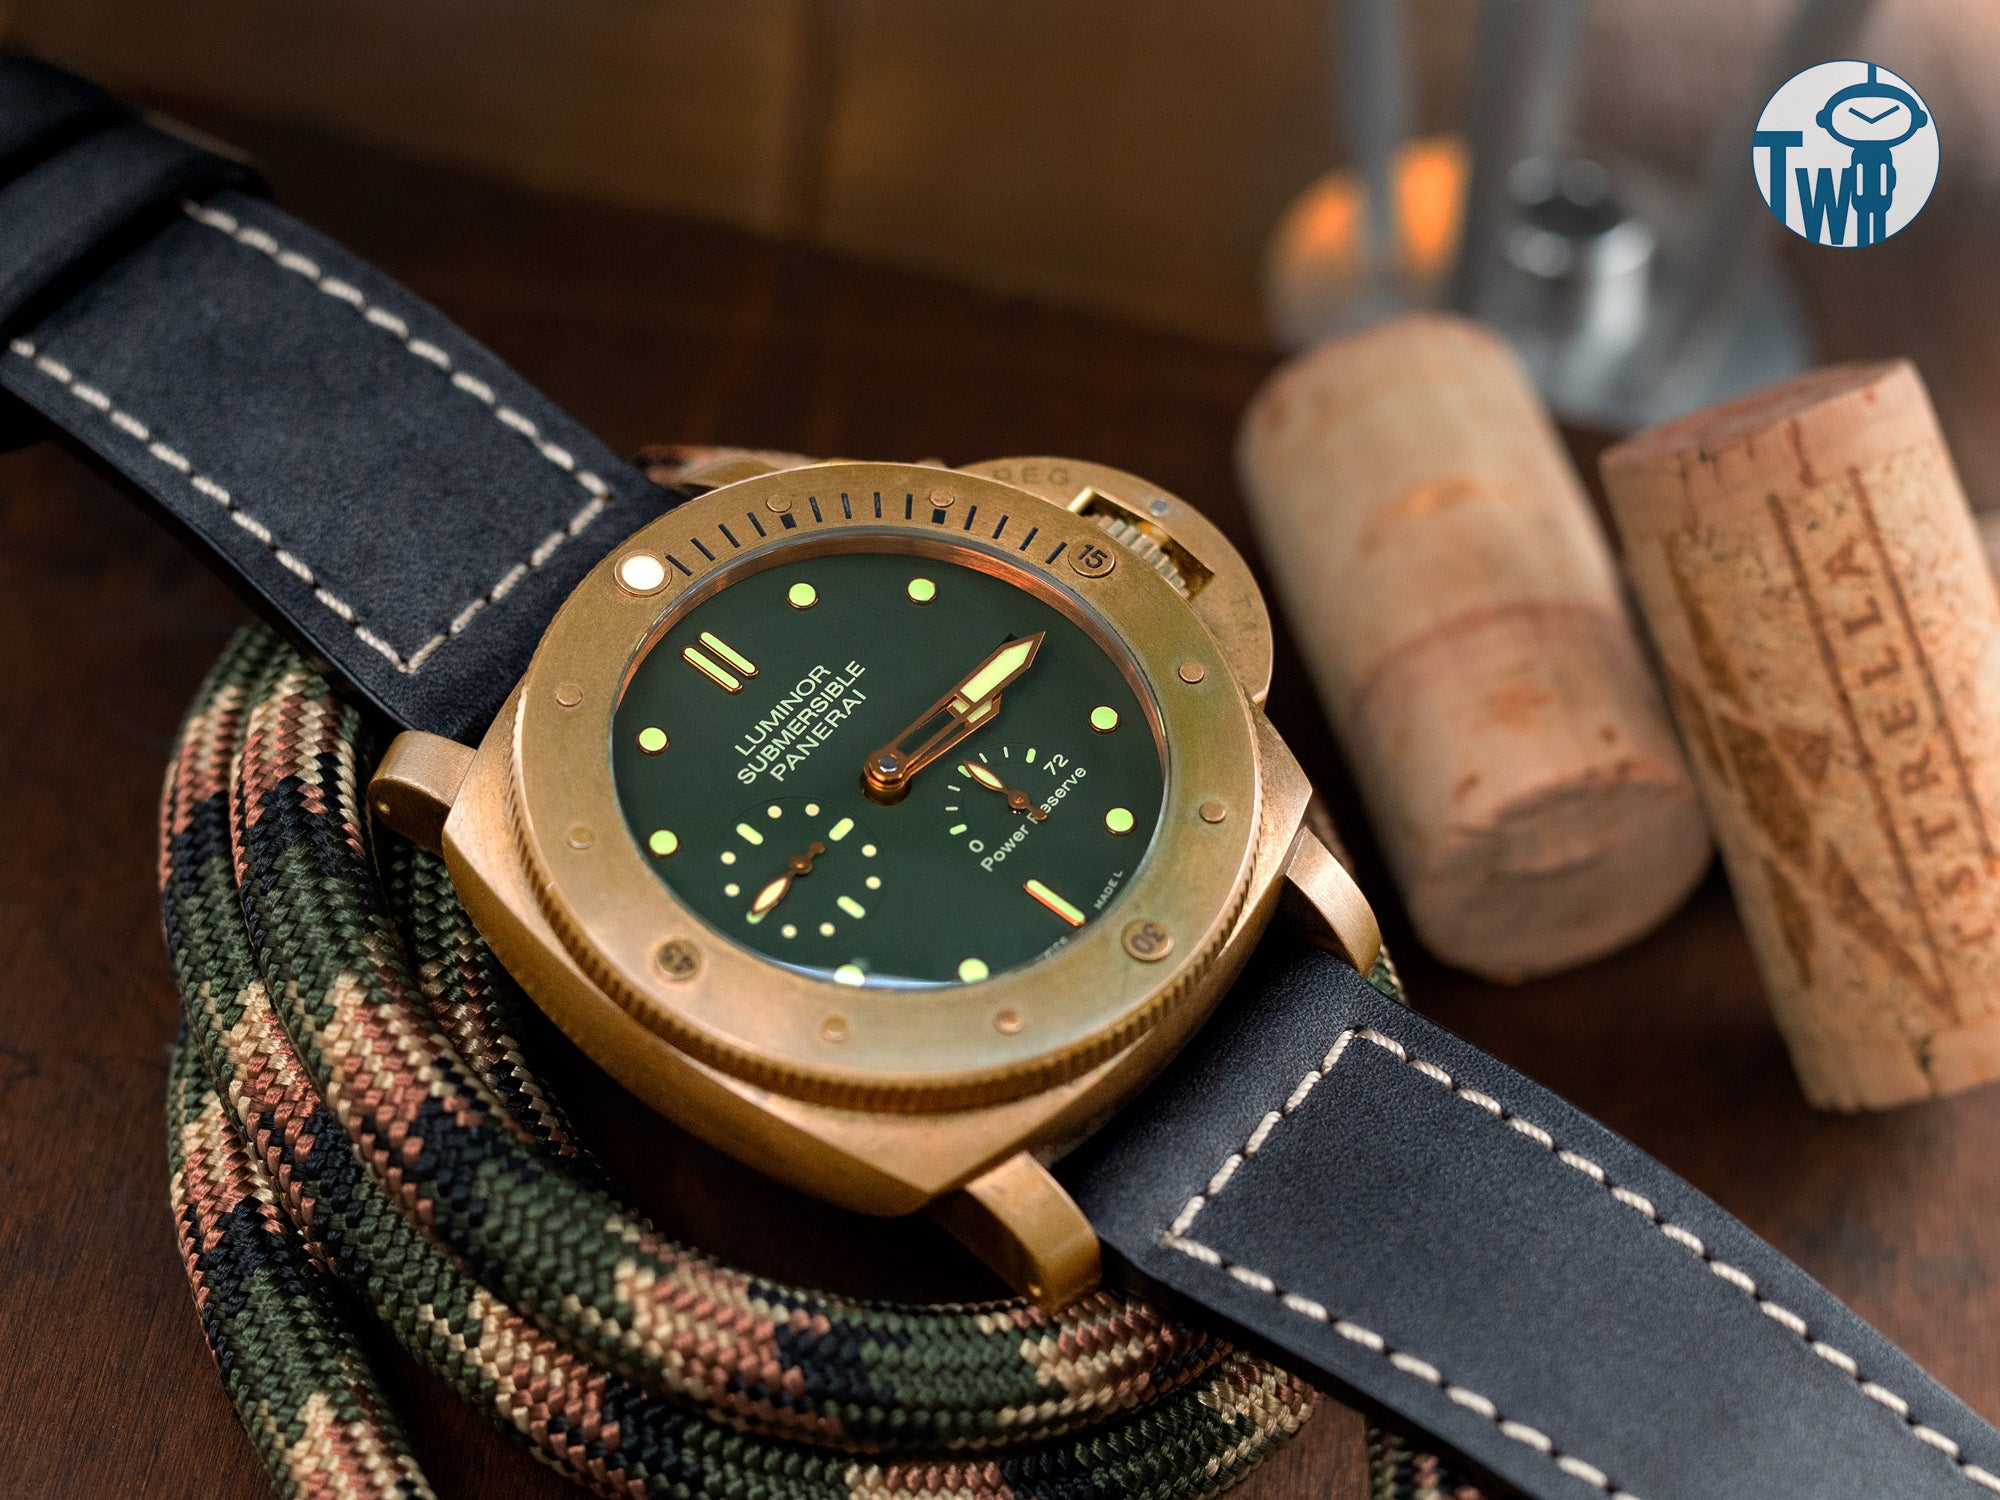 Panerai沛納海 Bronzo 的青銅錶殼隨著時間的流逝會呈現出獨特的銅綠，是Panerai沛納海最受歡迎和錶迷們喜愛的錶款。